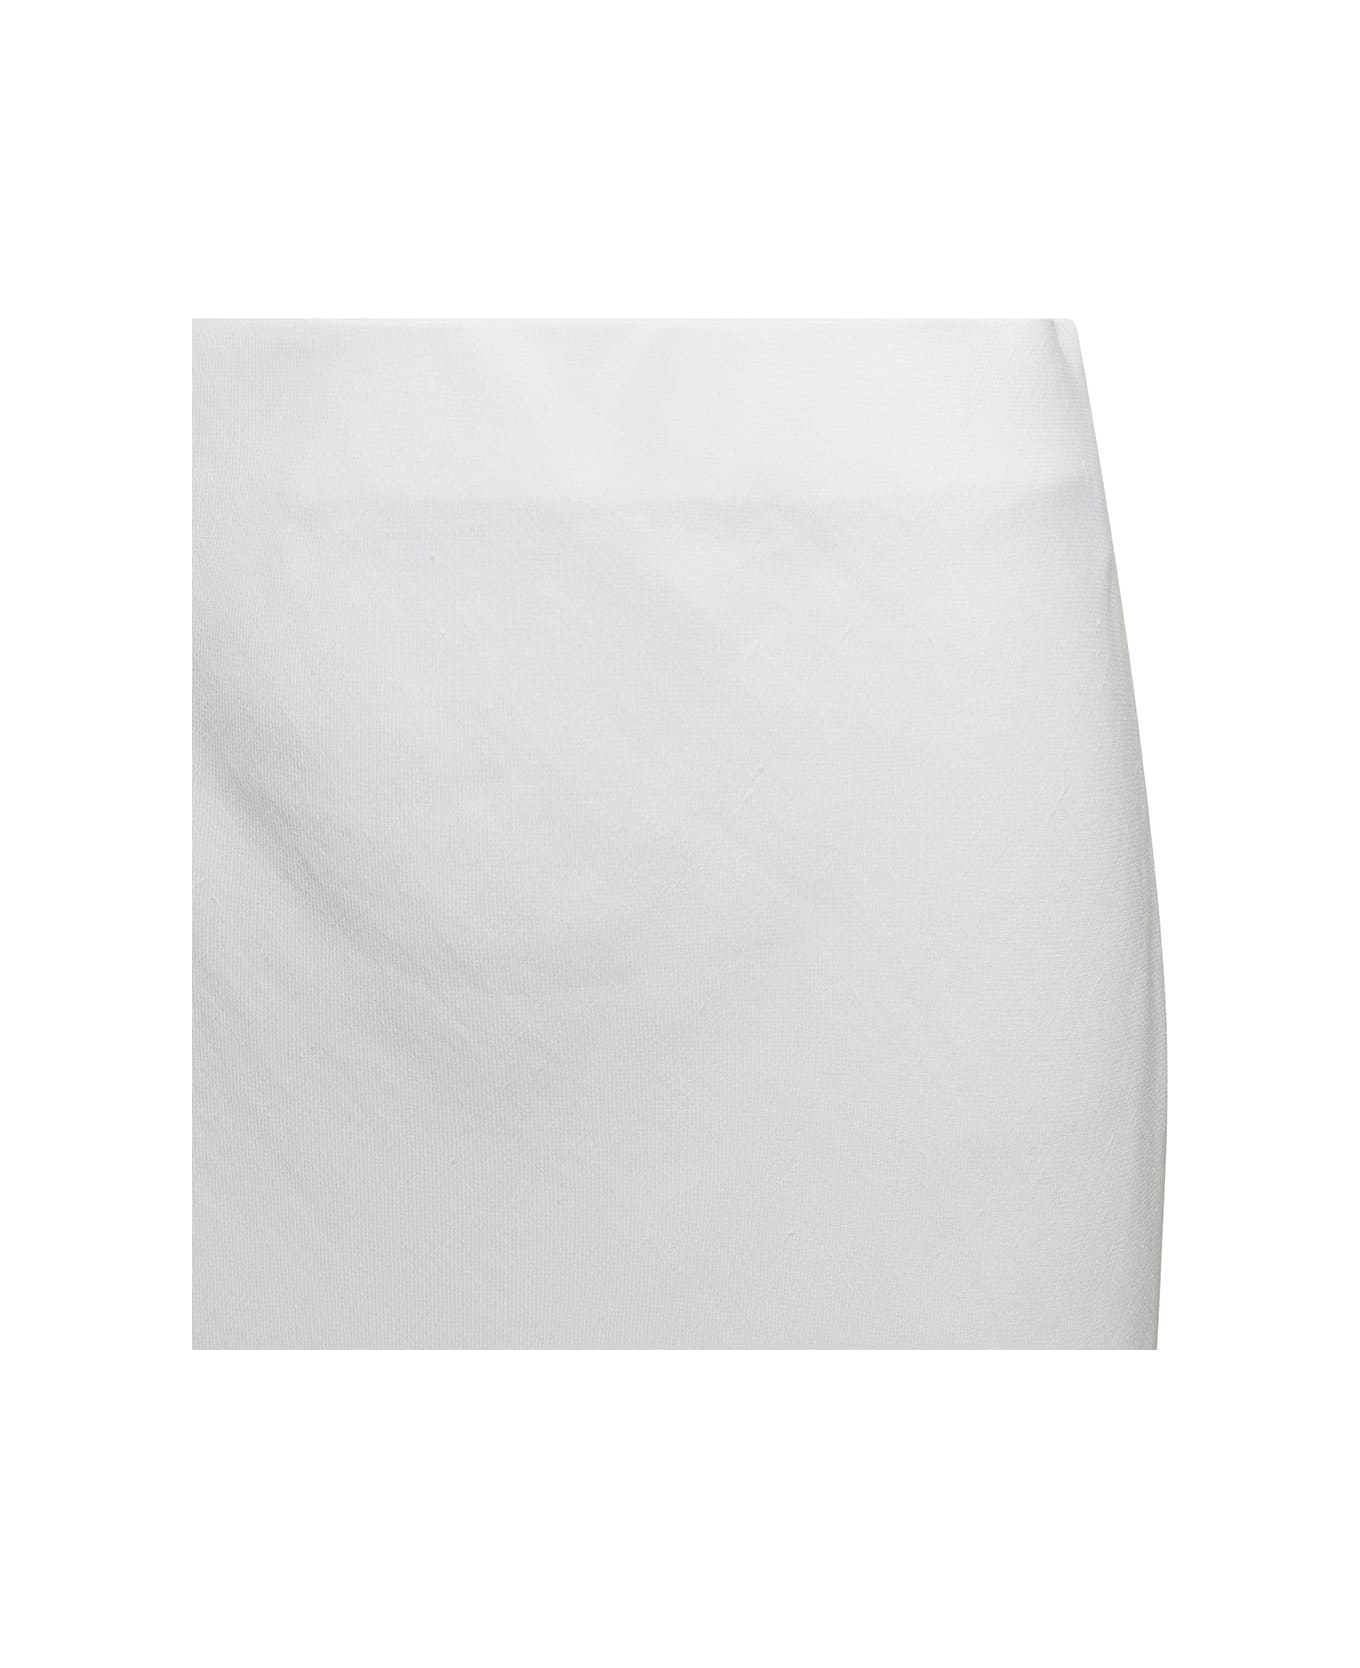 Brunello Cucinelli White Longuette Tube Skirt In Viscose Woman - White